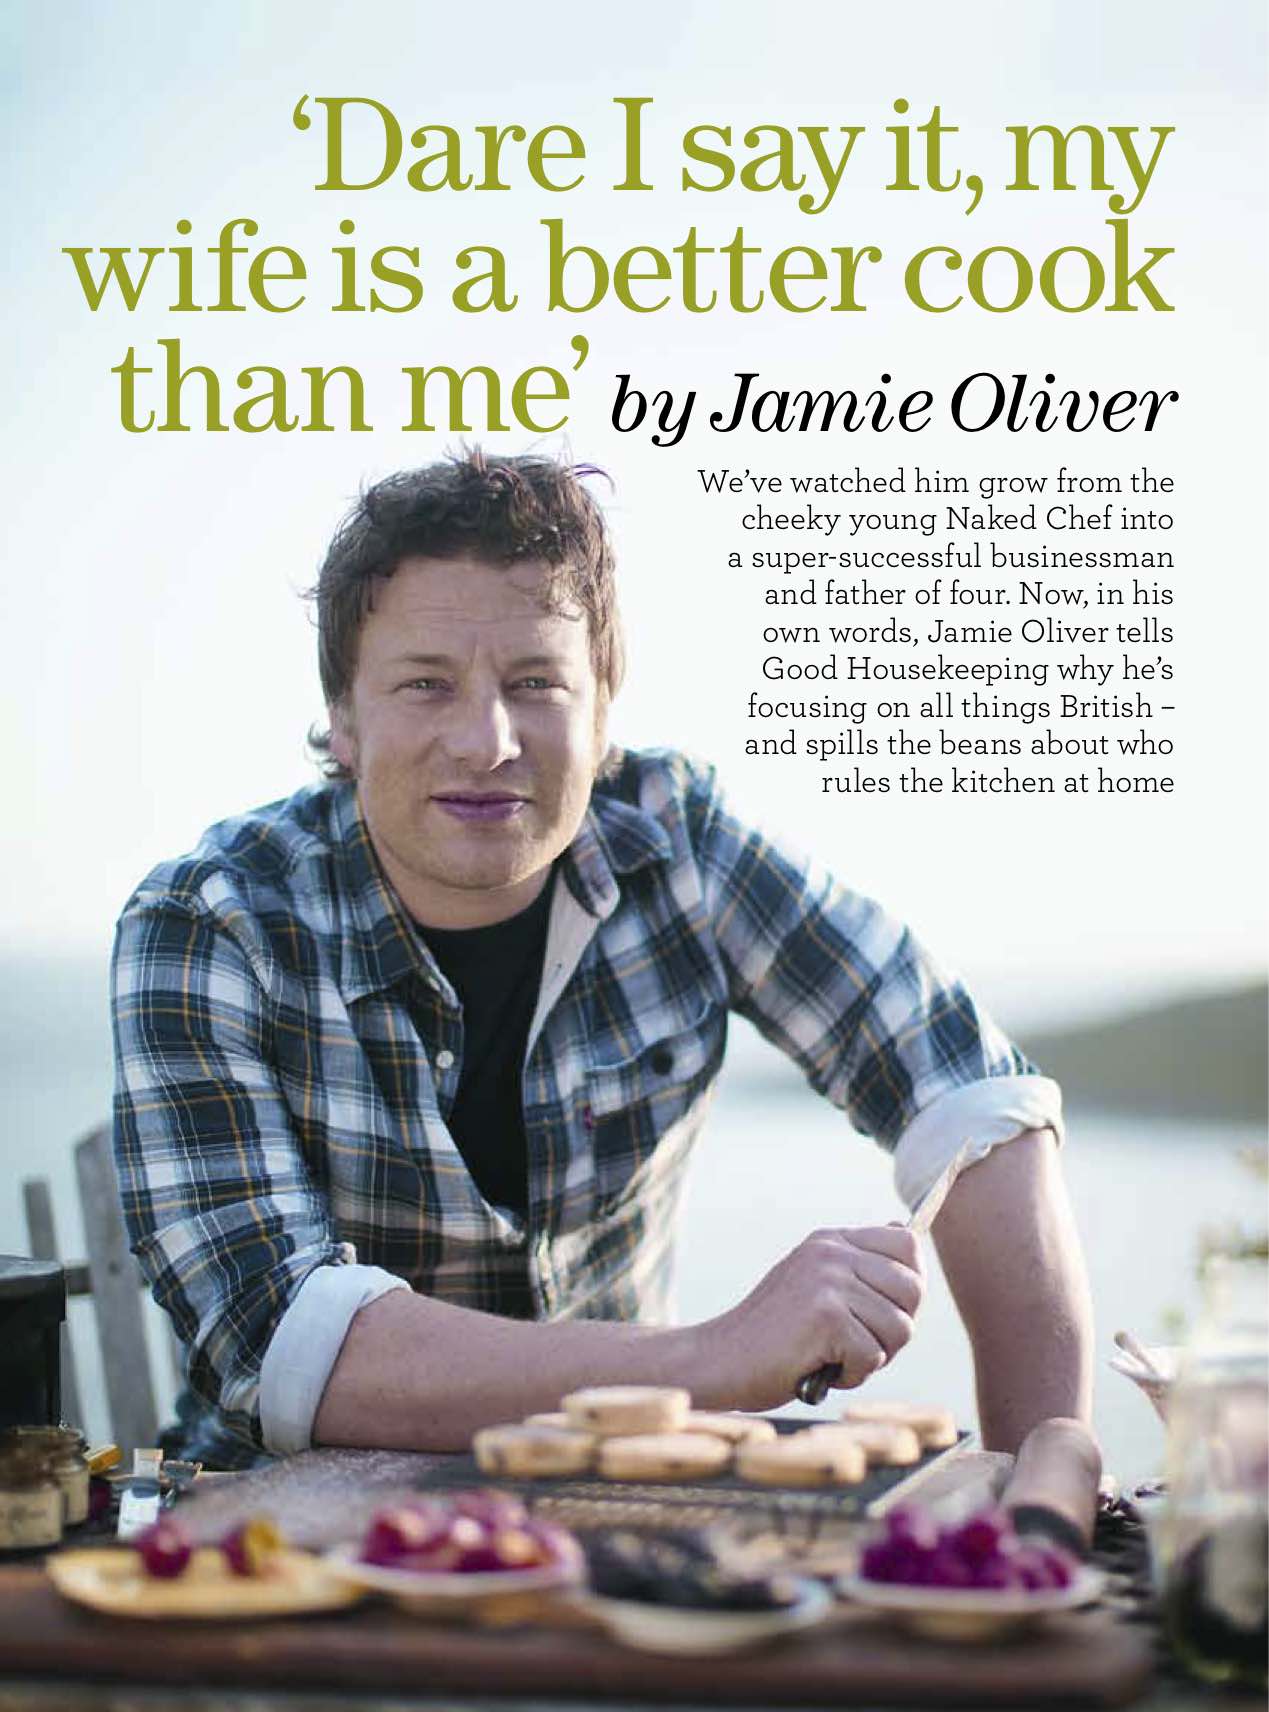 Jamie Oliver - Good Housekeeping